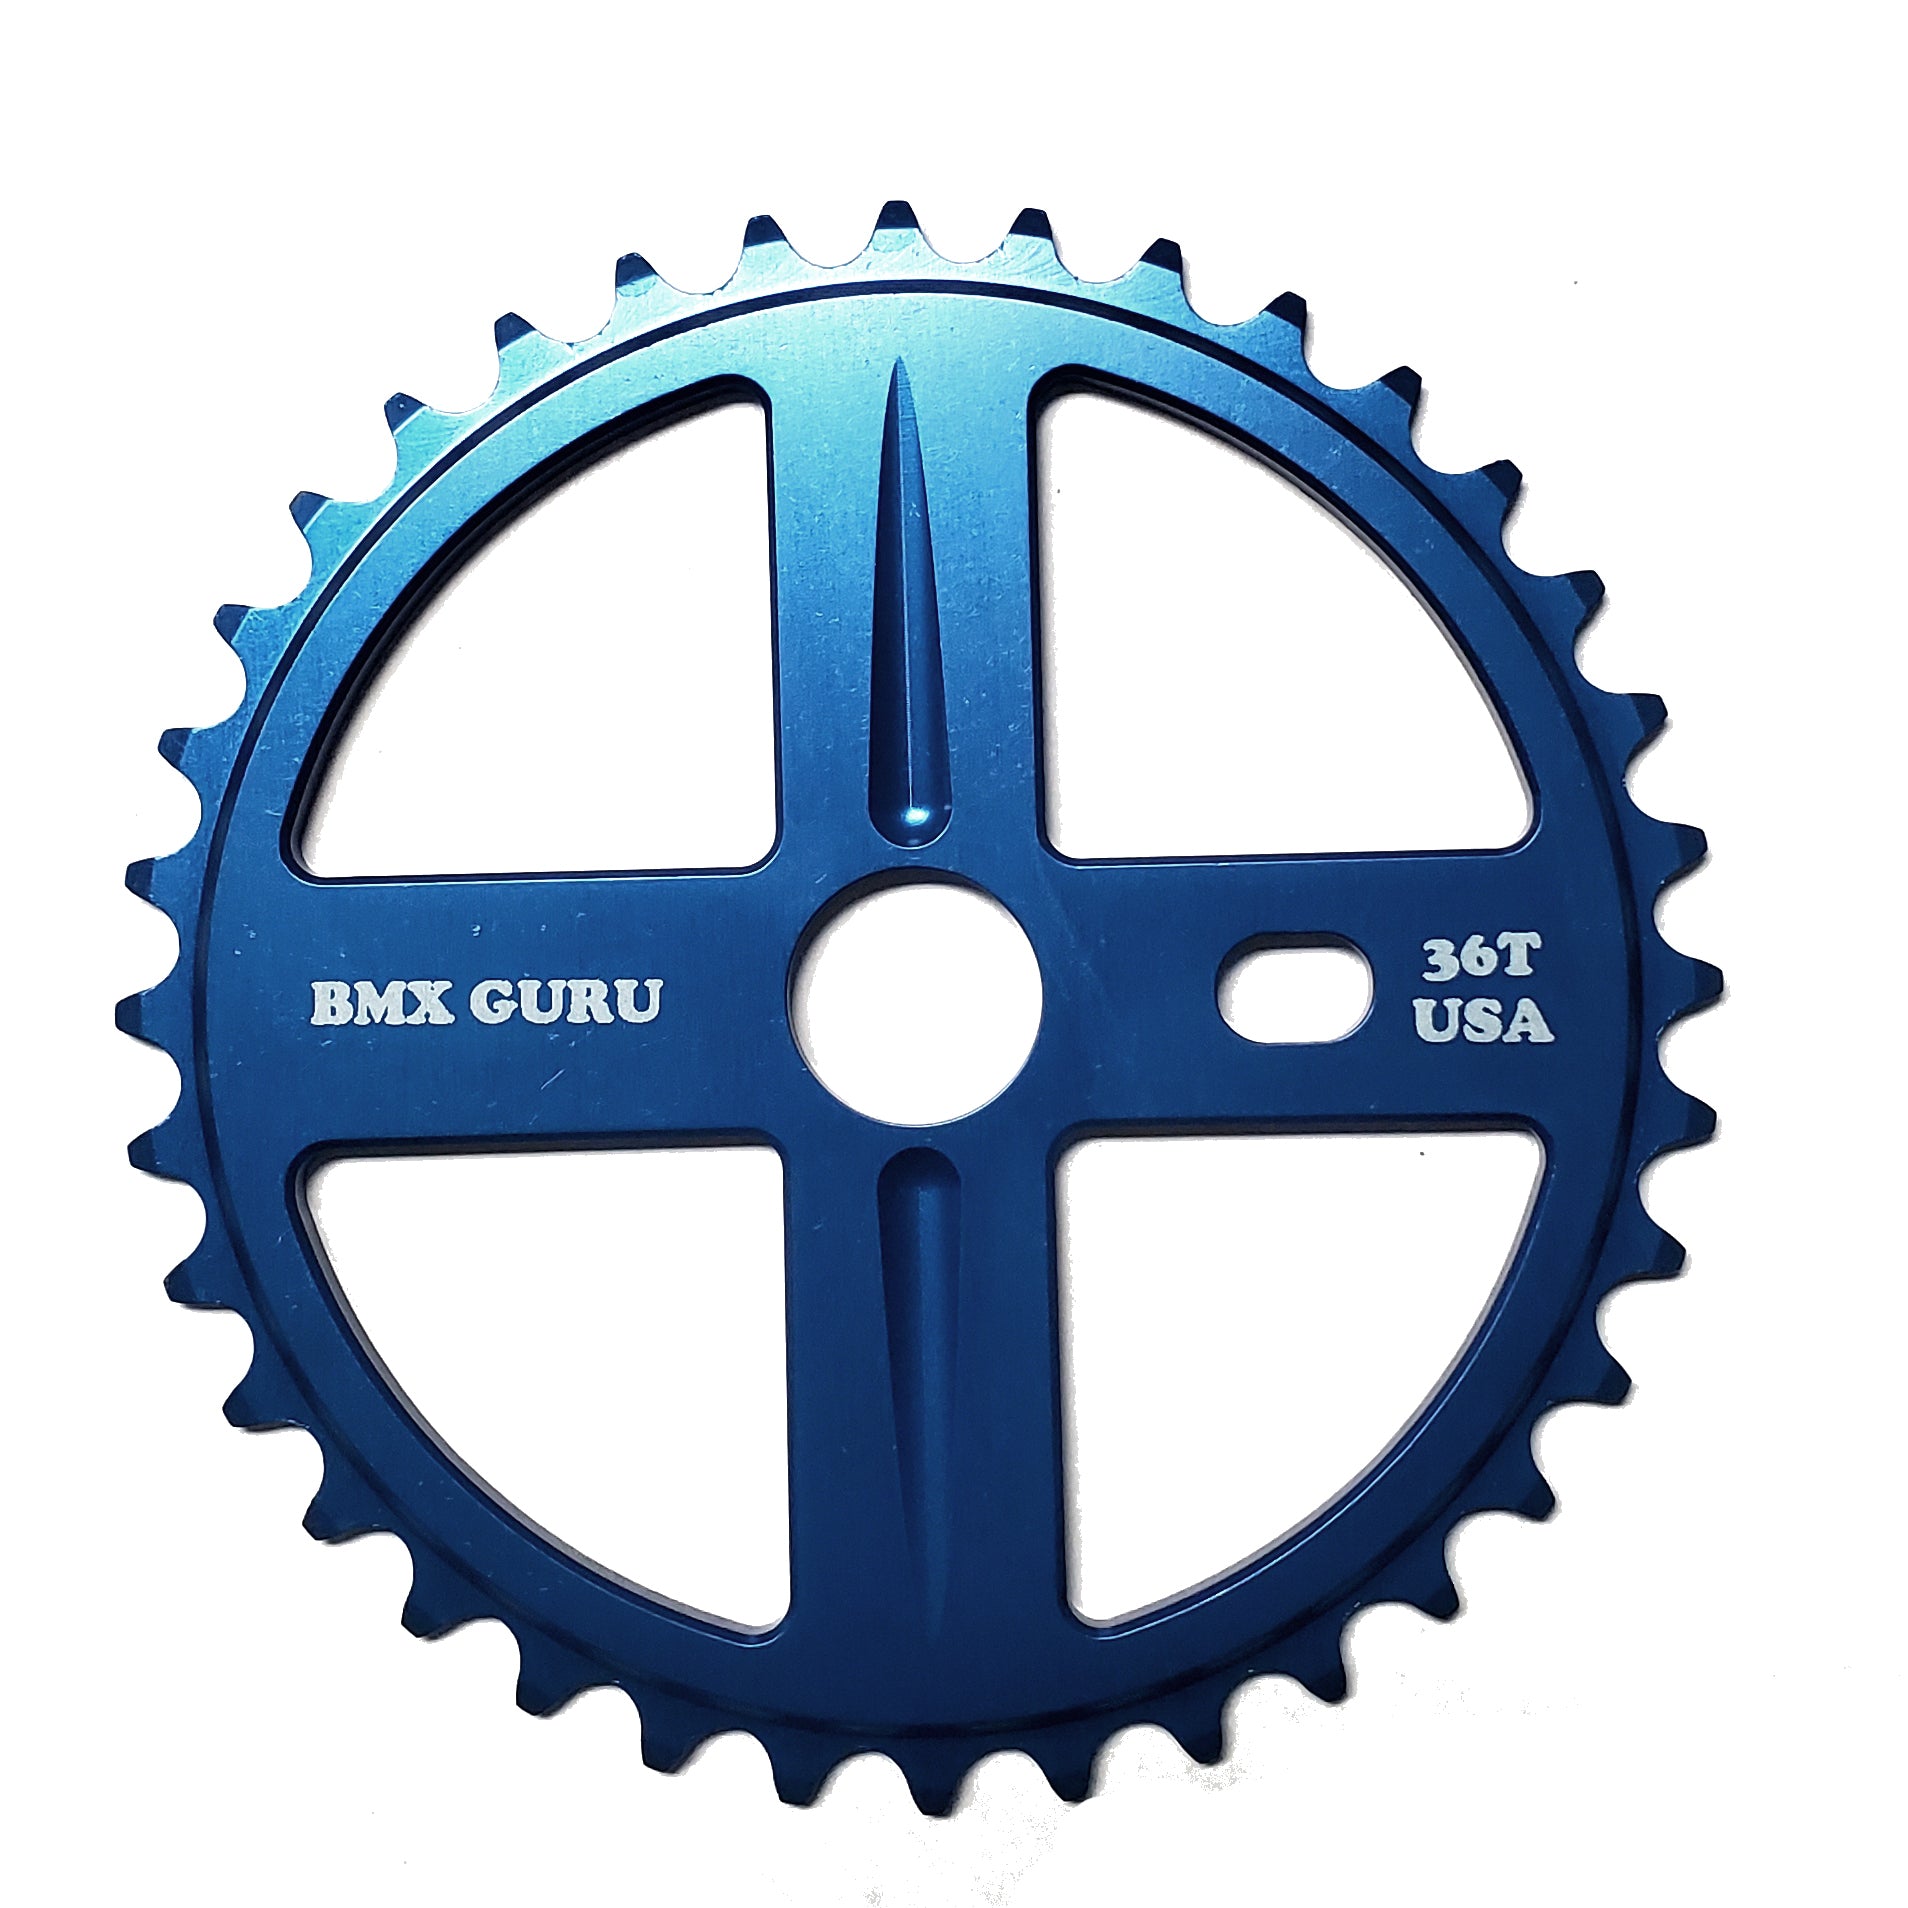 BMXGuru 36t Bolt Drive BMX Aluminum Sprocket / Chainwheel - Blue - USA Made